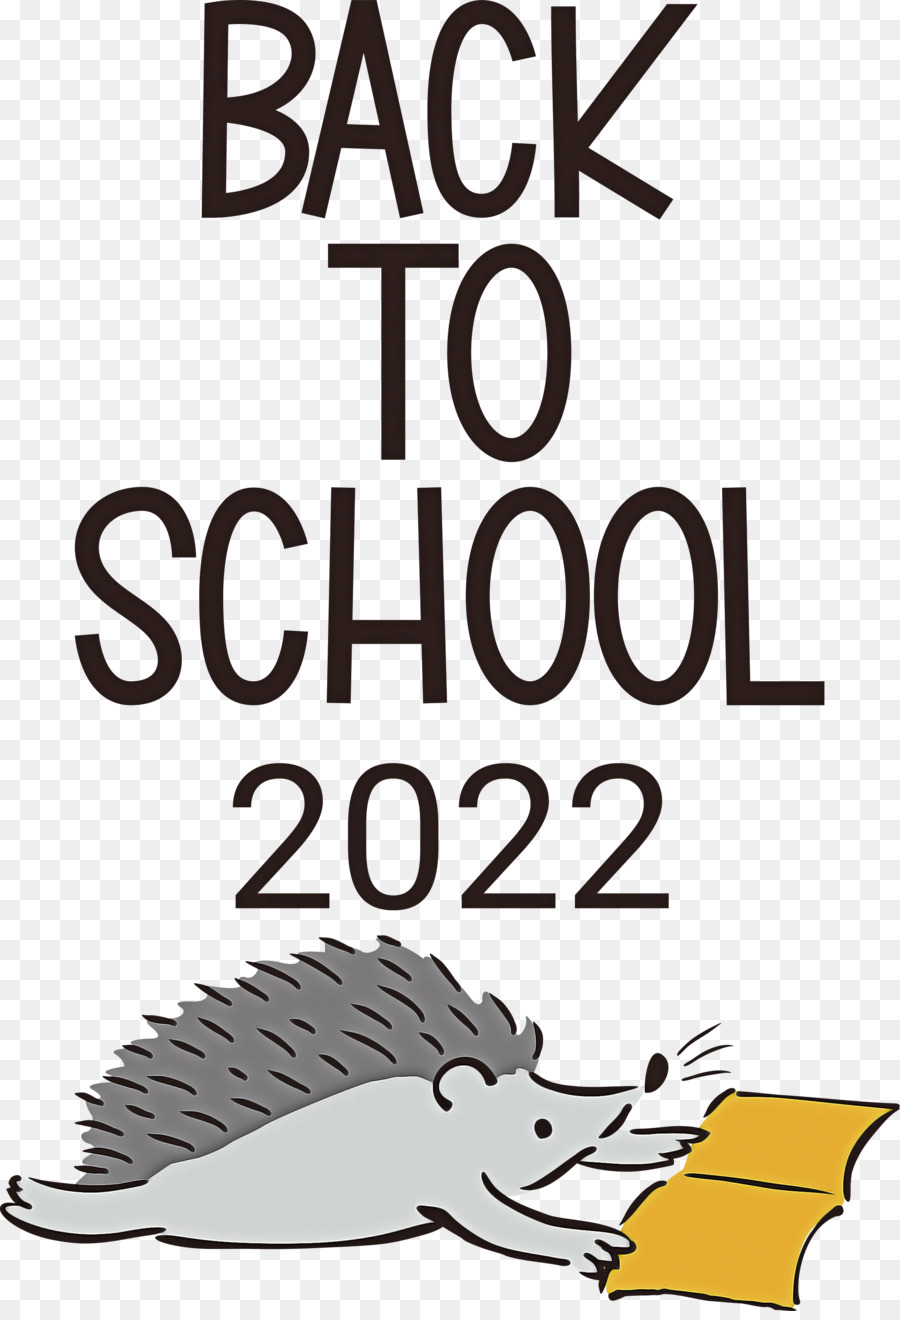 Torna a scuola 2022 - 